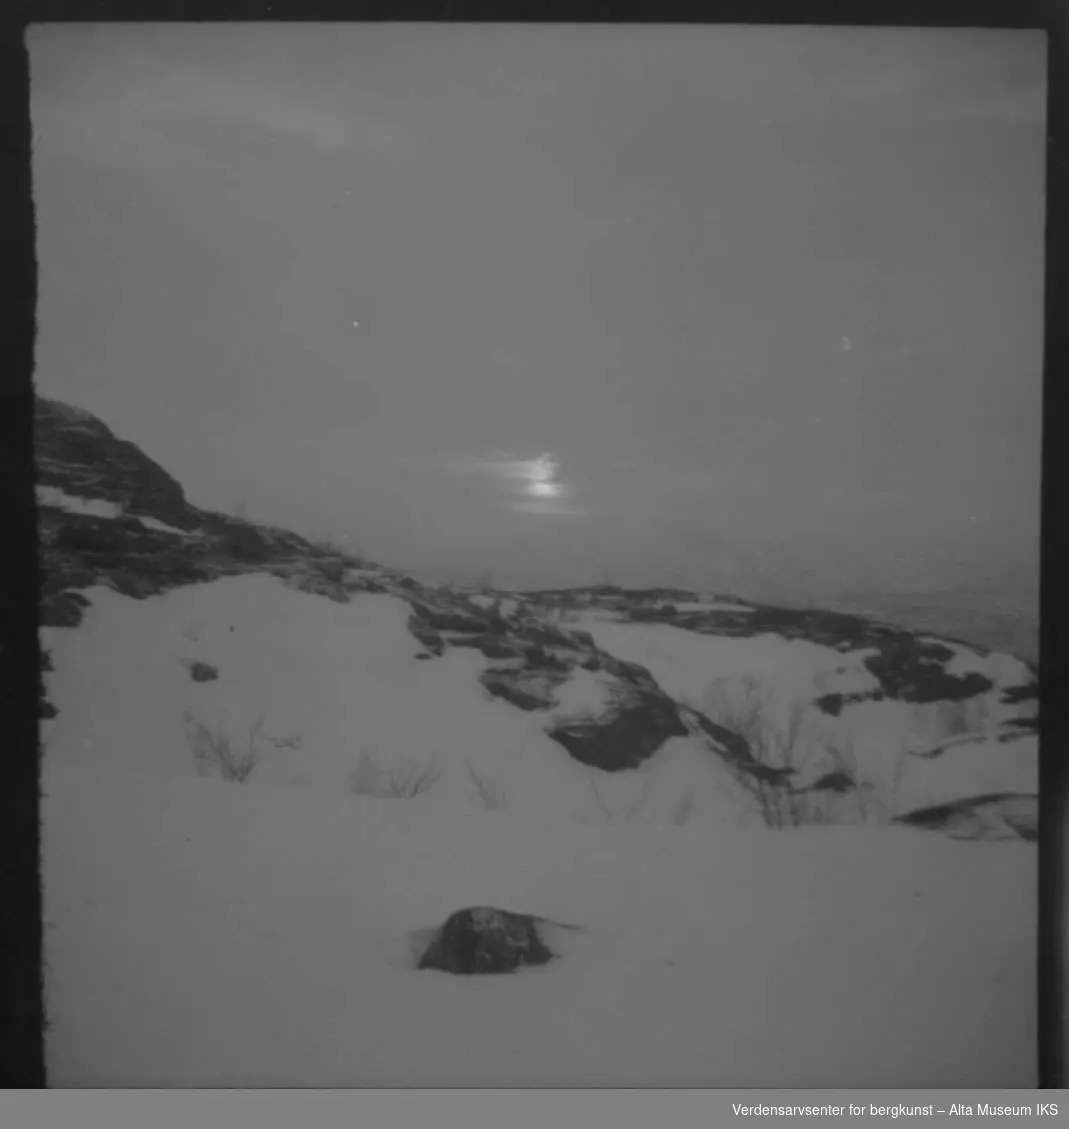 Bilde av komsatoppen med snø og sol.